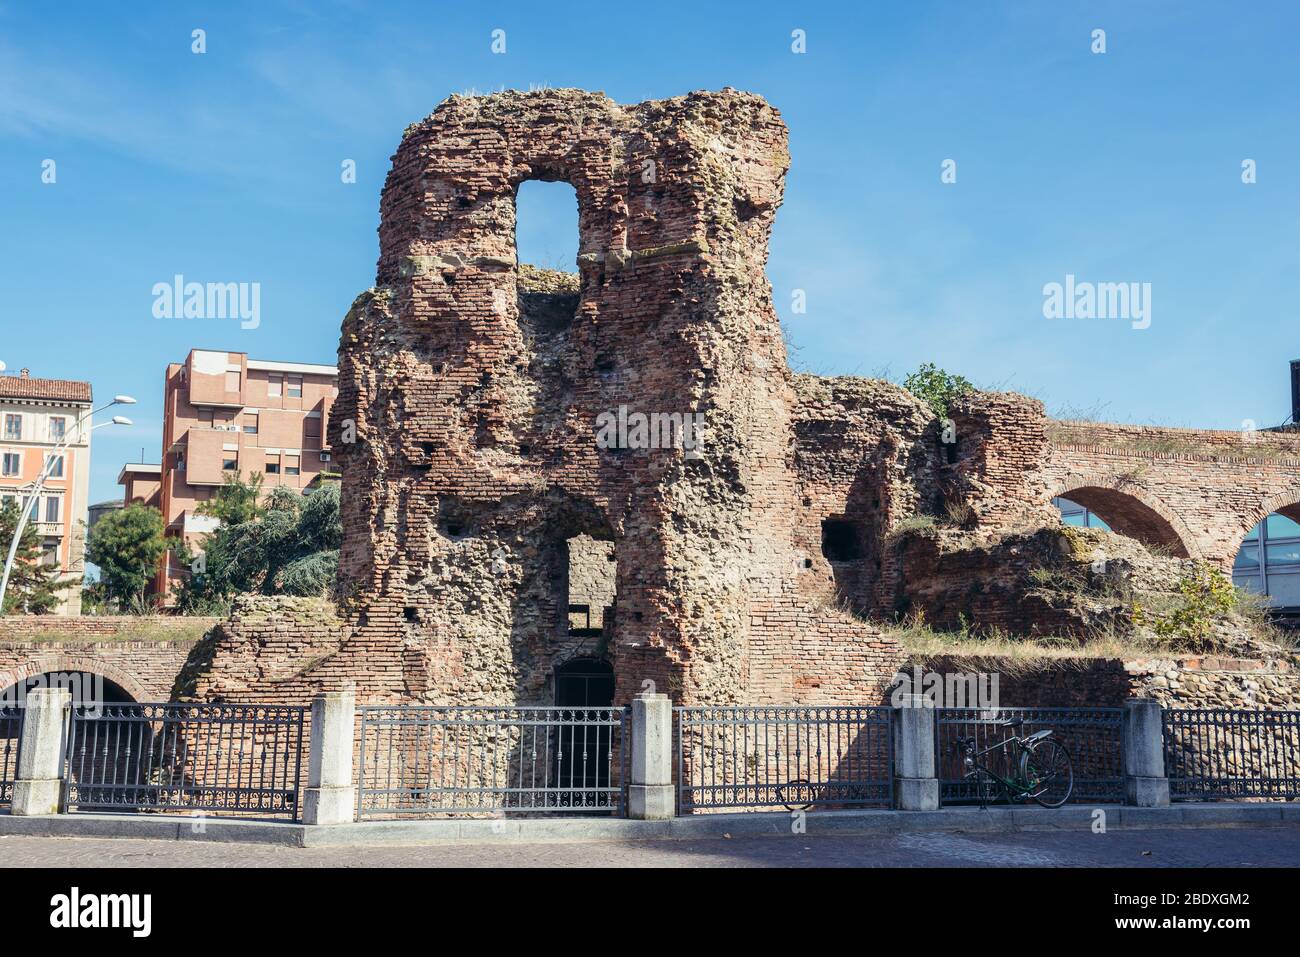 Ruines du XIVe siècle de la porte historique de Porta Galliera dans le parc Montagnola de Bologne, capitale et plus grande ville de la région d'Emilie Romagne en Italie Banque D'Images